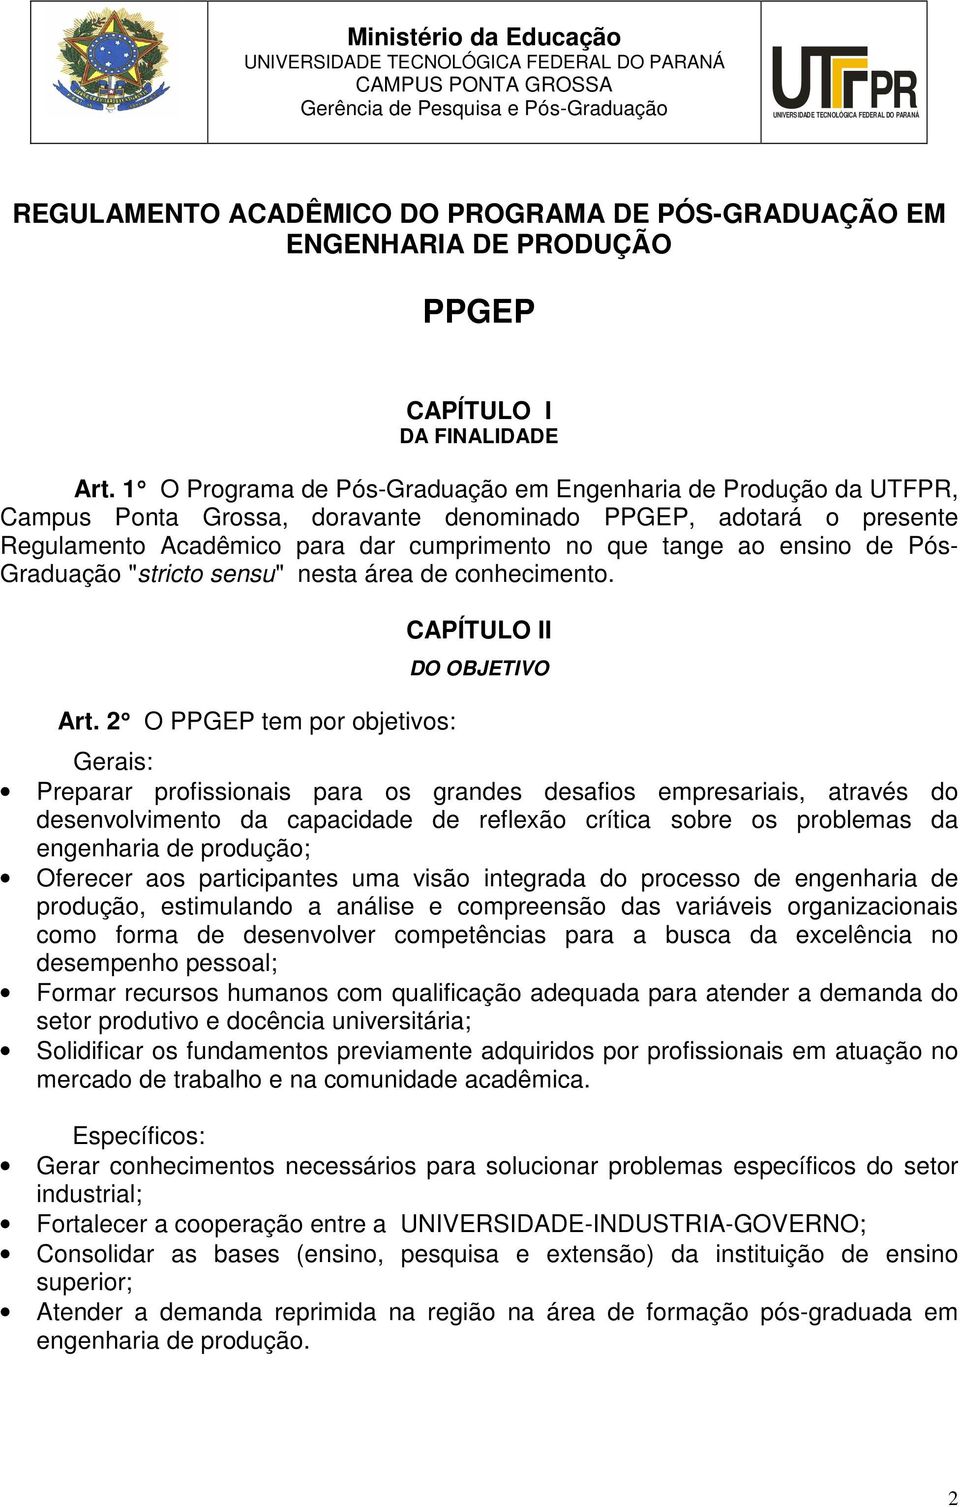 1 O Programa de Pós-Graduação em Engenharia de Produção da UTFPR, Campus Ponta Grossa, doravante denominado PPGEP, adotará o presente Regulamento Acadêmico para dar cumprimento no que tange ao ensino